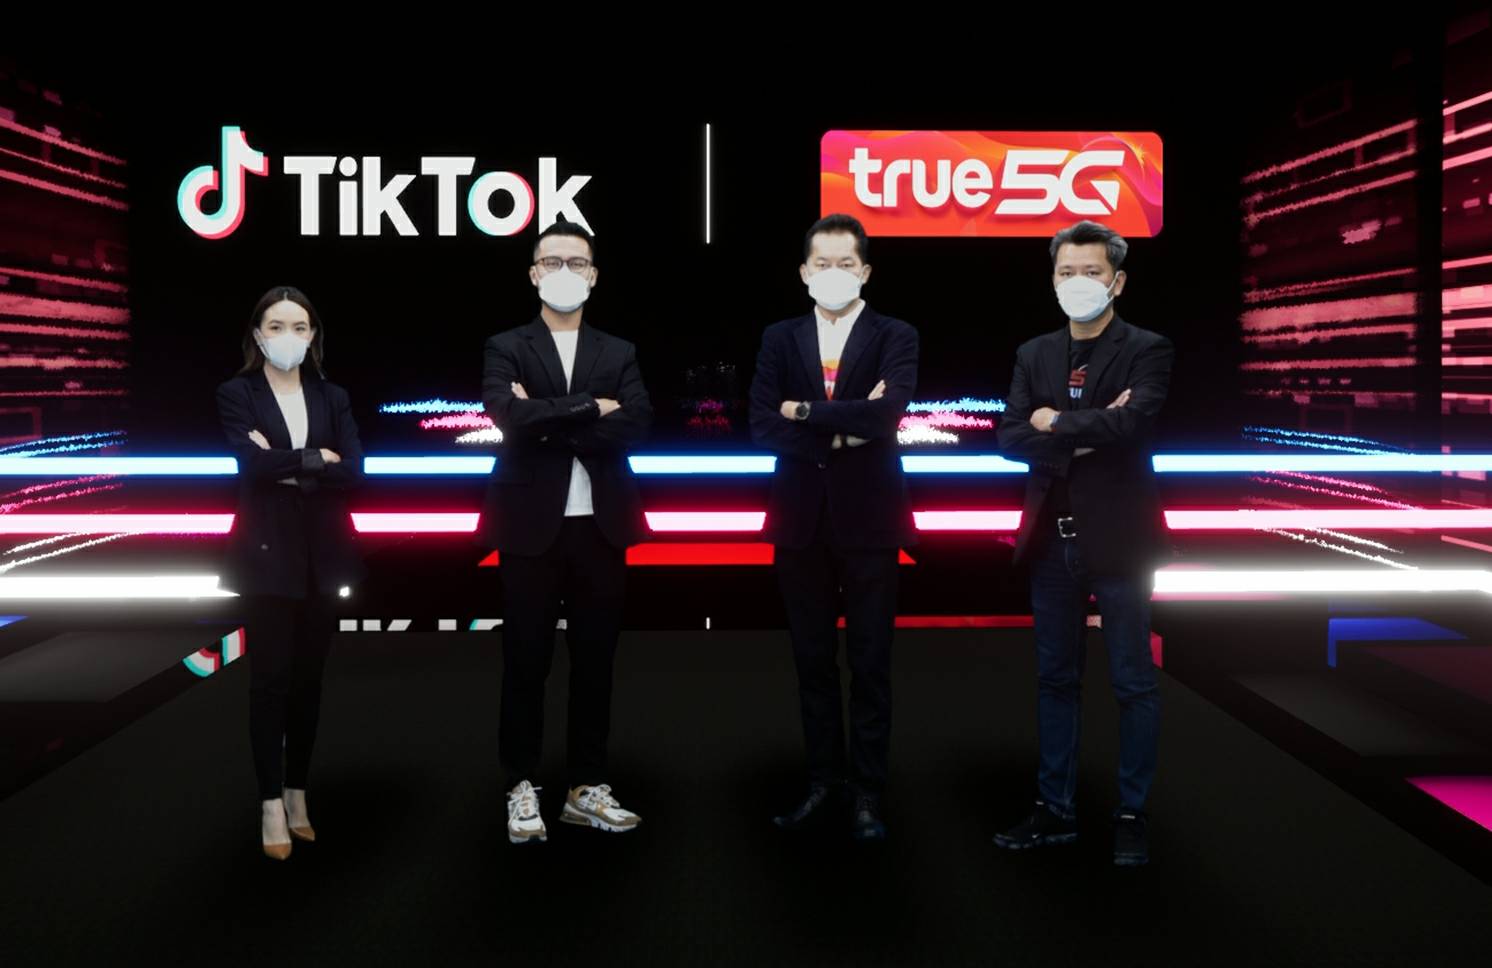 ทรู ลุยสร้างอีโคซิสเท็ม 5G จับมือ TikTok ปั้นรายการสด เจาะคนรุ่นใหม่ – IT